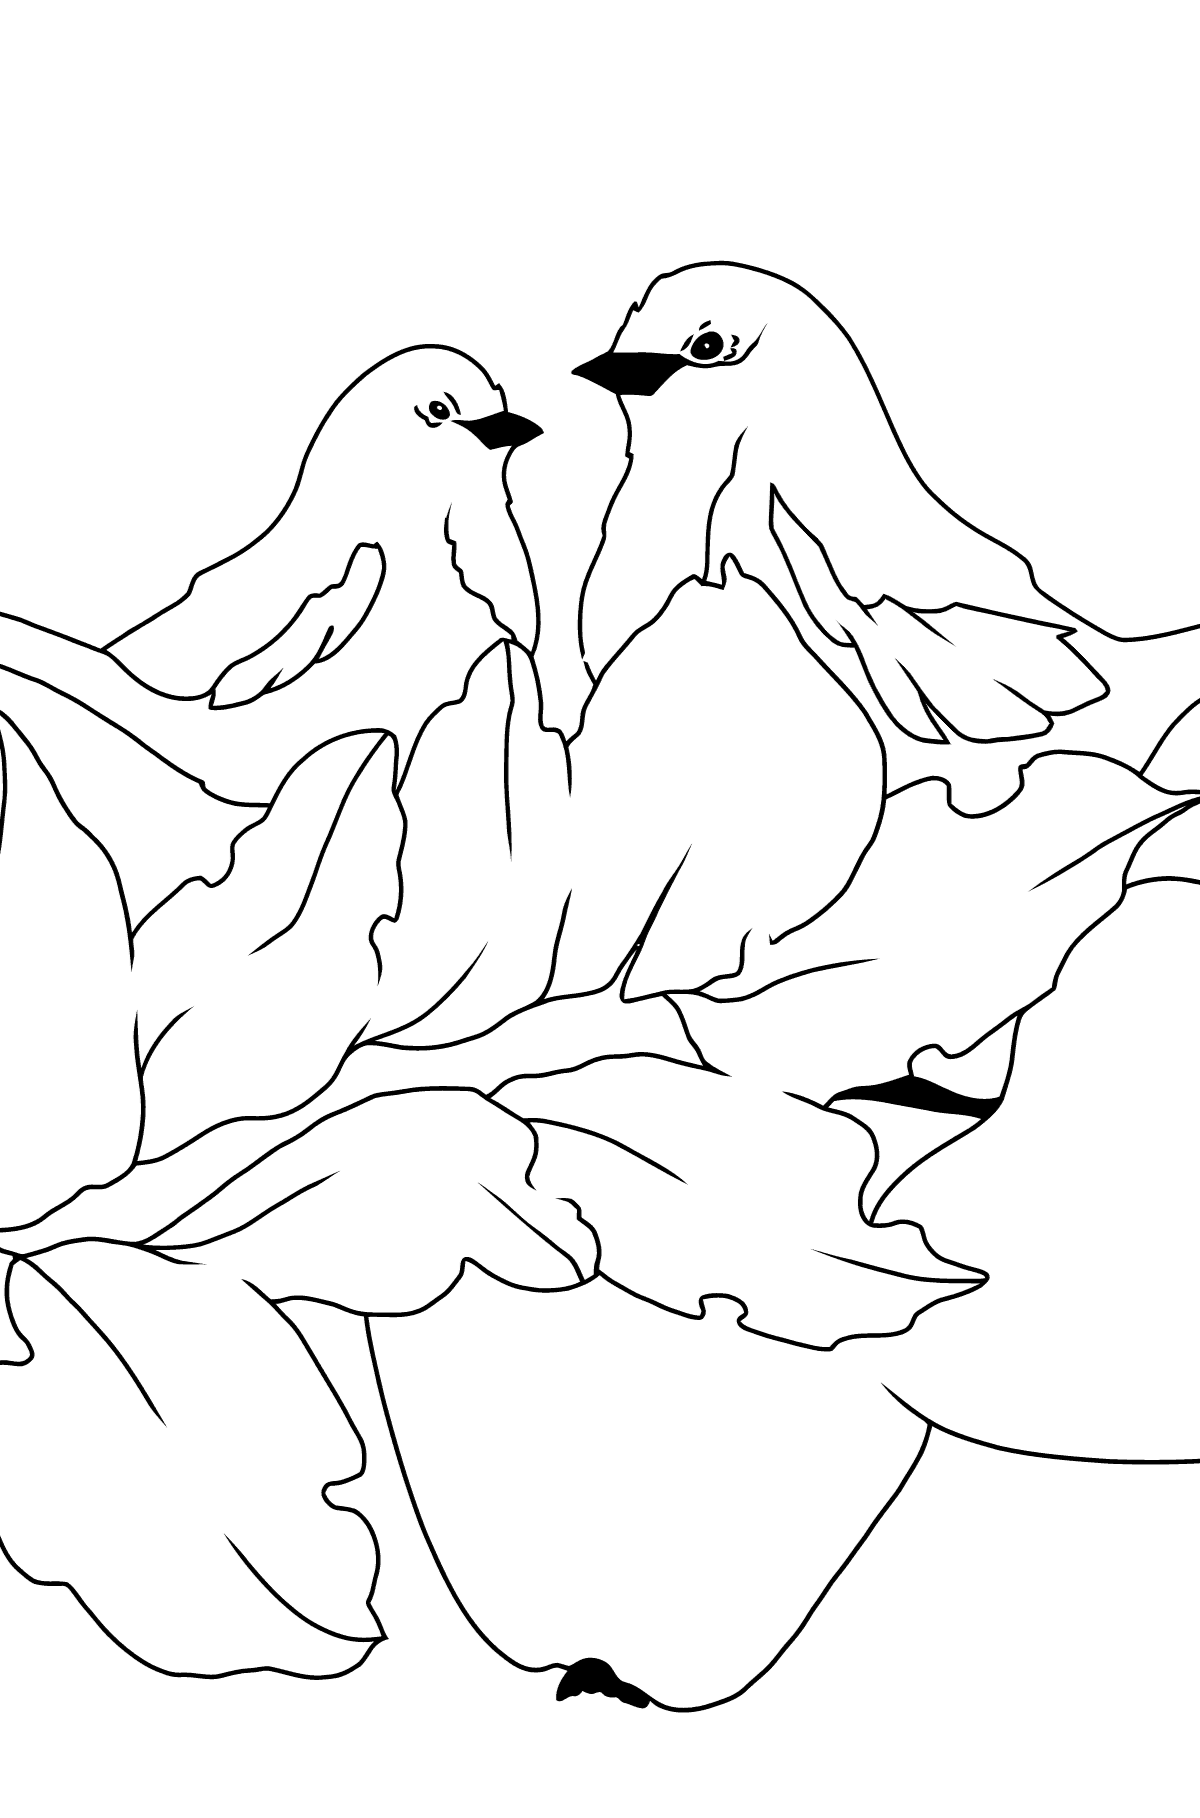 Dibujo para Colorear de Otoño - Aves en la Rama de un Manzano - Colorear para Niños